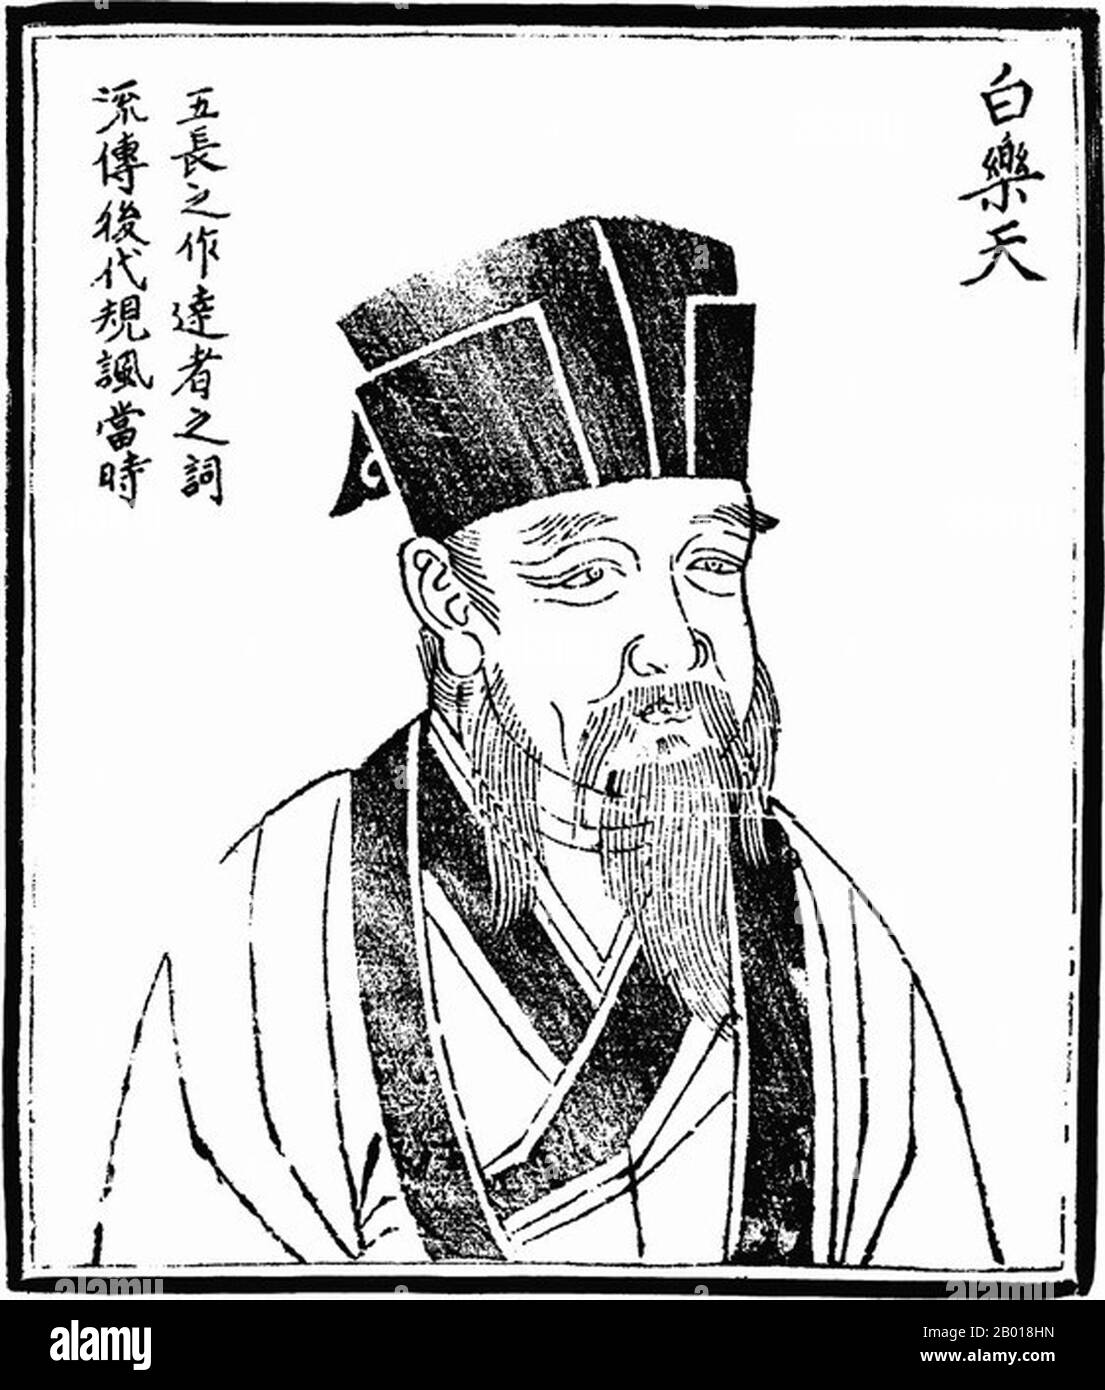 China: Bai Juyi (772-846), gefeierter Dichter der Tang-Dynastie (618-907). Holzschnitt aus 'Bilder alter Menschen in der Geschichte', c. 1498. Bai Juyi, auch bekannt als Bo Juyi oder Po Chu-i und Höflichkeitsname Letian, war ein chinesischer Dichter der Tang-Dynastie. Seine Gedichte betreffen vor allem seine Verantwortung als Gouverneur mehrerer kleiner Provinzen. Er ist auch in Japan bekannt, wo sein Name Haku Kyo'i lautet Bai Juyi wurde in Xinzheng als Sohn einer armen, aber gelehrten Familie geboren. Im Alter von zehn Jahren wurde er von seiner Familie weggeschickt, um einen Krieg zu vermeiden, der im Norden Chinas ausbrach, und ging zu Verwandten. Stockfoto